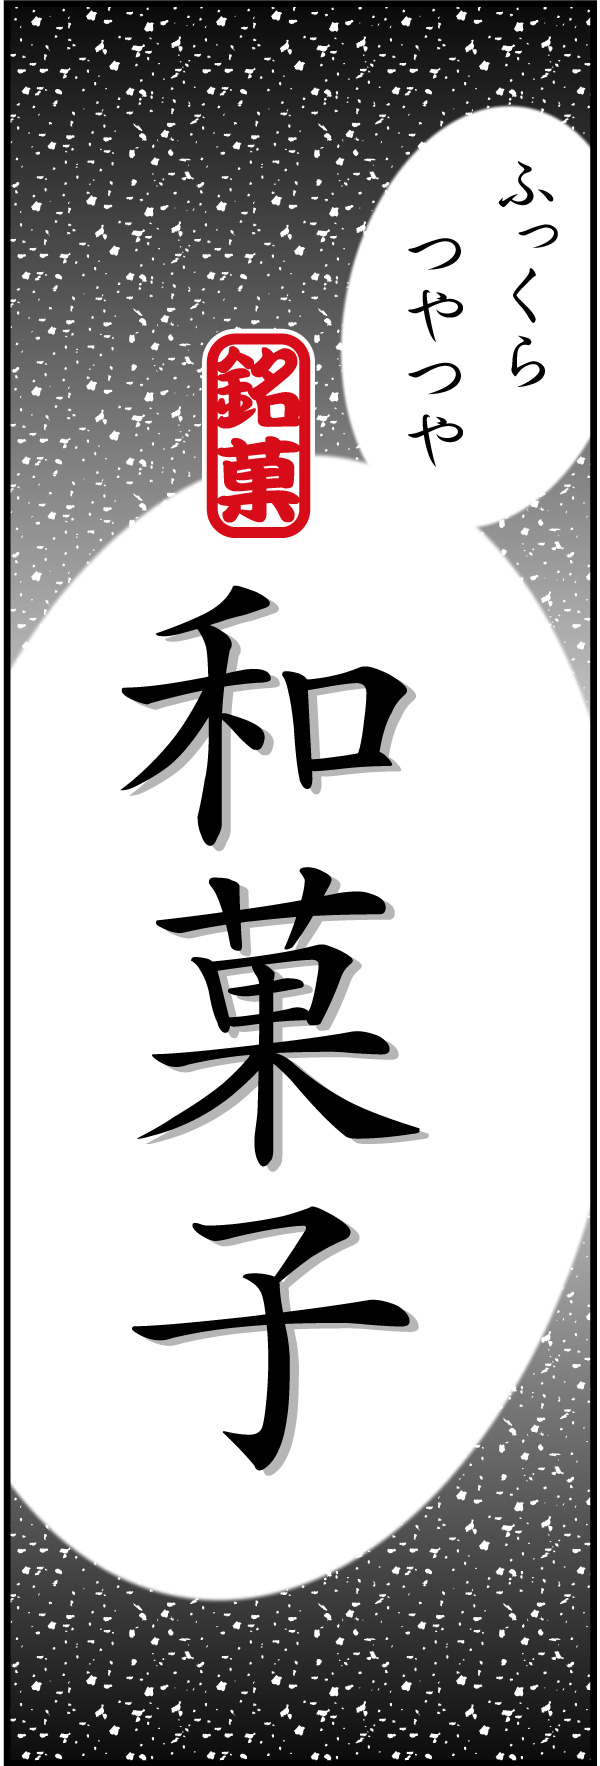 和菓子 14「和菓子」ののぼりです。シンプルで目立つ、品のあるデザインにしました。(Y.M) 